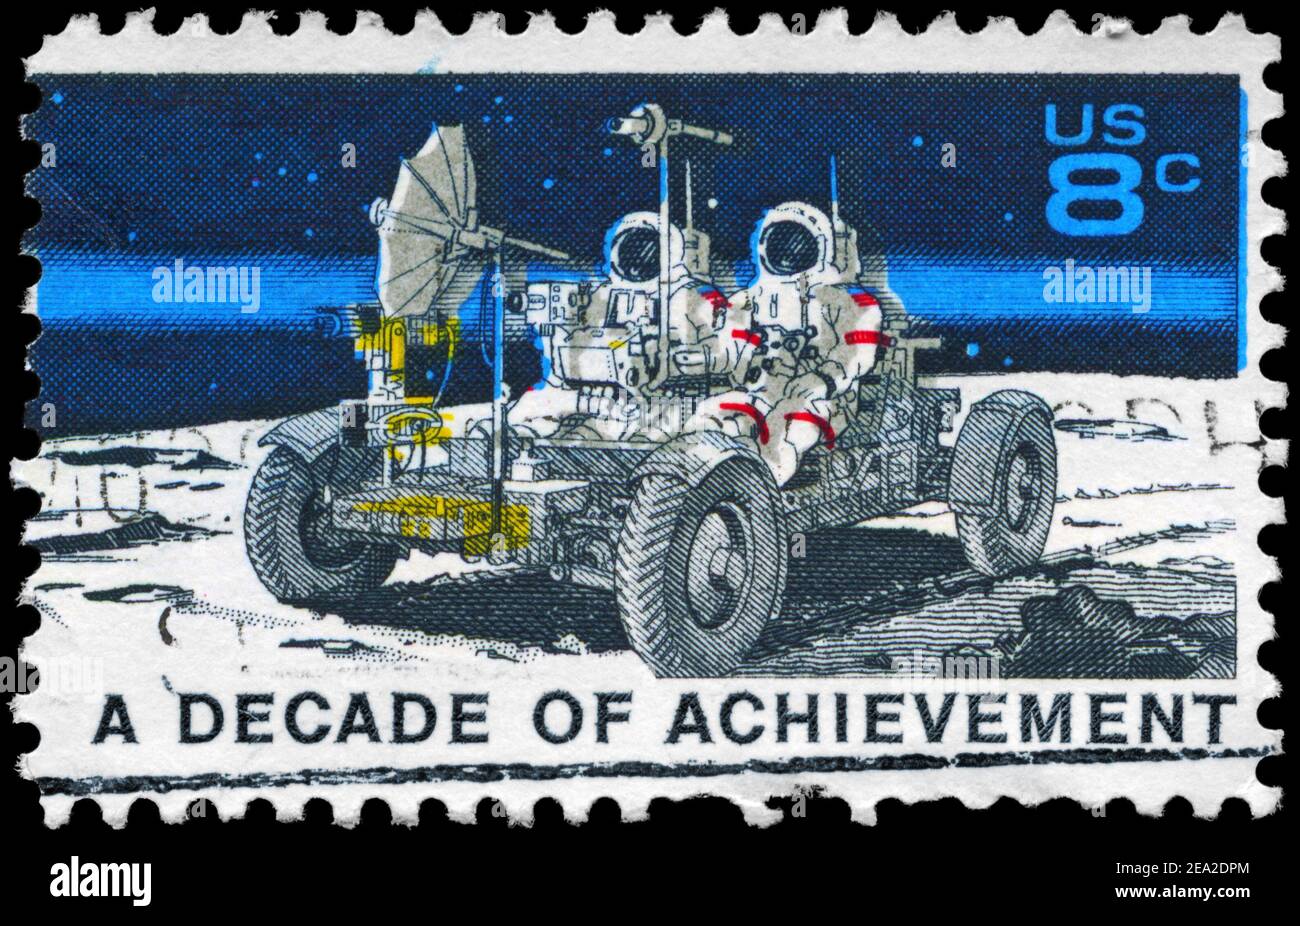 États-Unis - VERS 1971: Un timbre imprimé aux États-Unis montre le Lunar Rover, Apollo 15 lune mission d'exploration juillet 26-août 7, Space Achievement Decade, c Banque D'Images